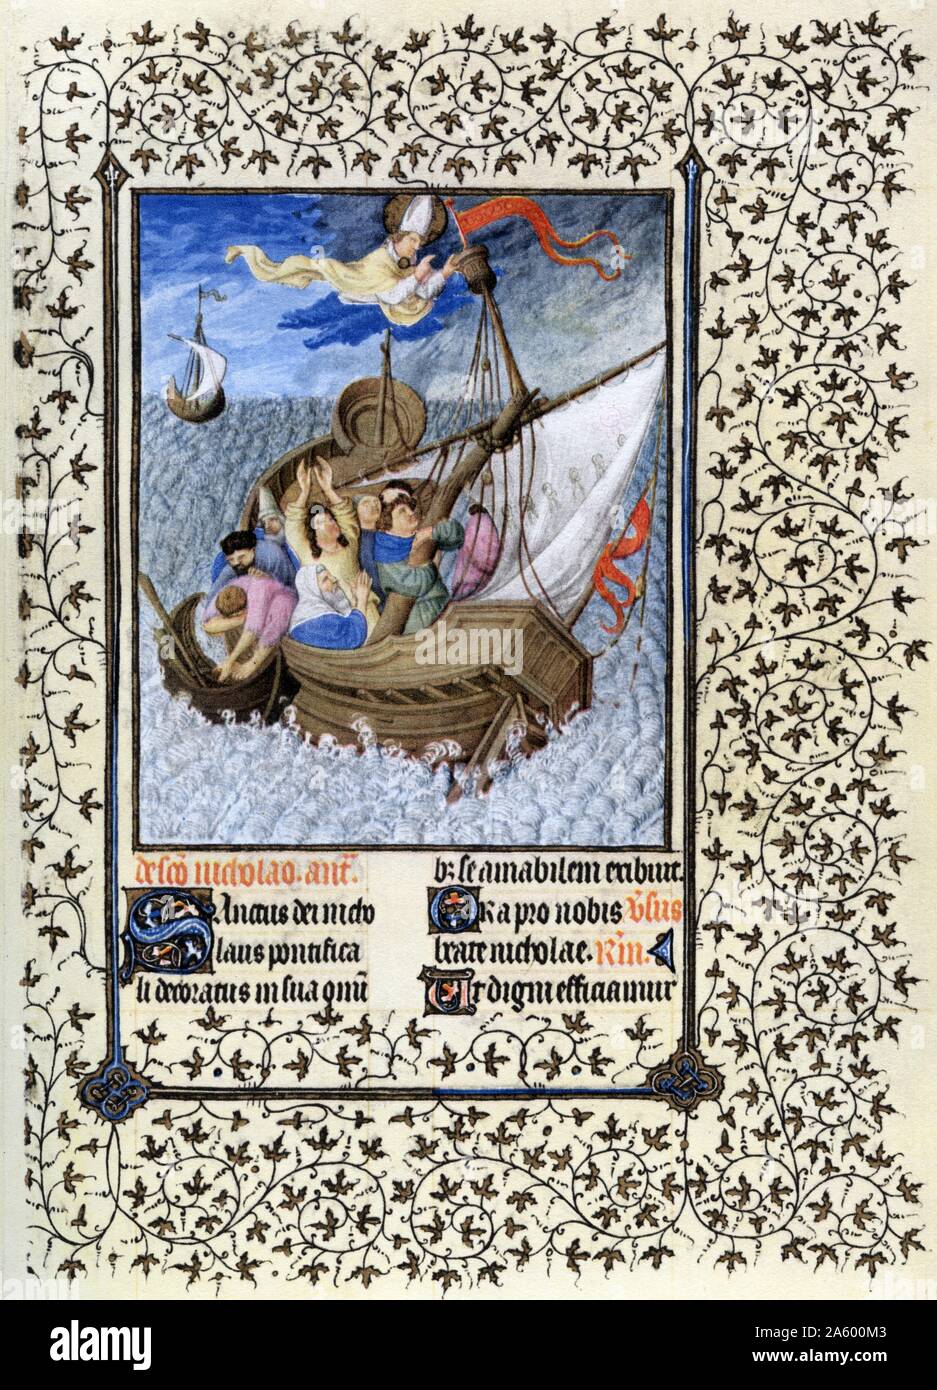 Beleuchtung mit Sankt Nikolaus aus den Belles Heures von Jean de France, Duc de Berry (schöne Stunden) eine frühe 15. Jahrhundert beleuchtet Manuskript-Buch von Stunden. Vom 15. Jahrhundert Stockfoto